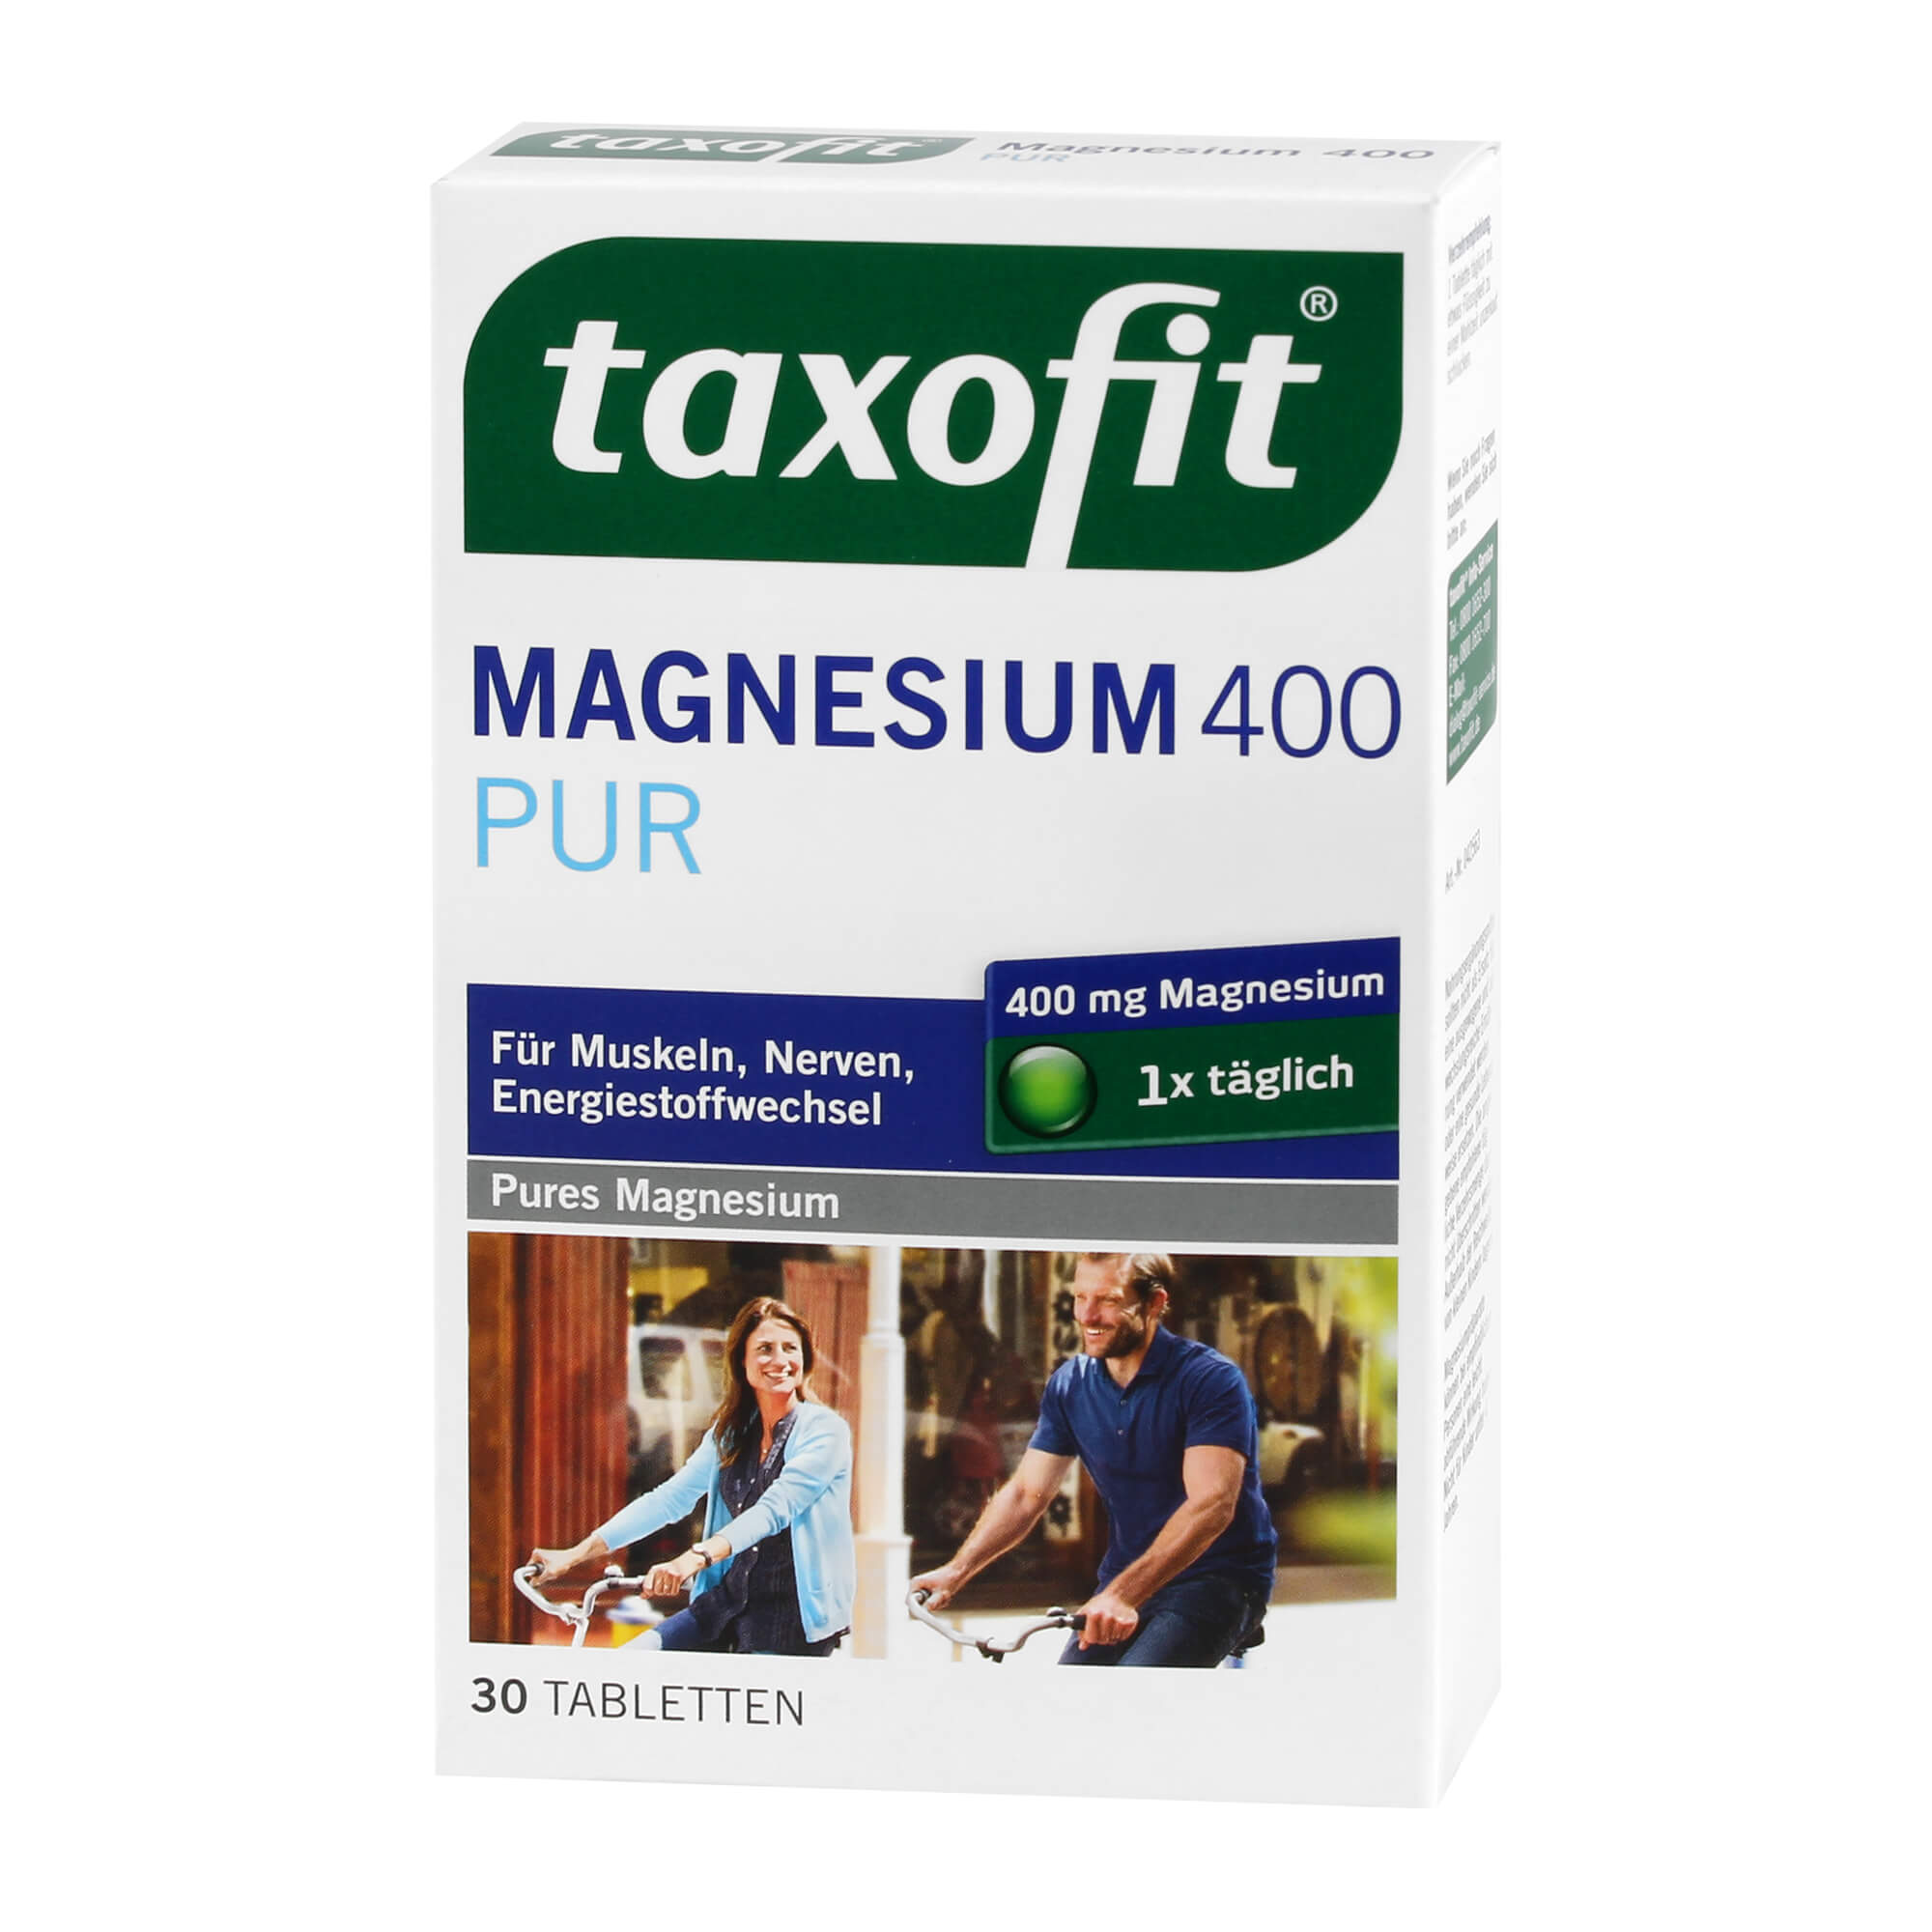 Nahrungsergänzungsmittel mit dem Mineralstoff Magnesium.